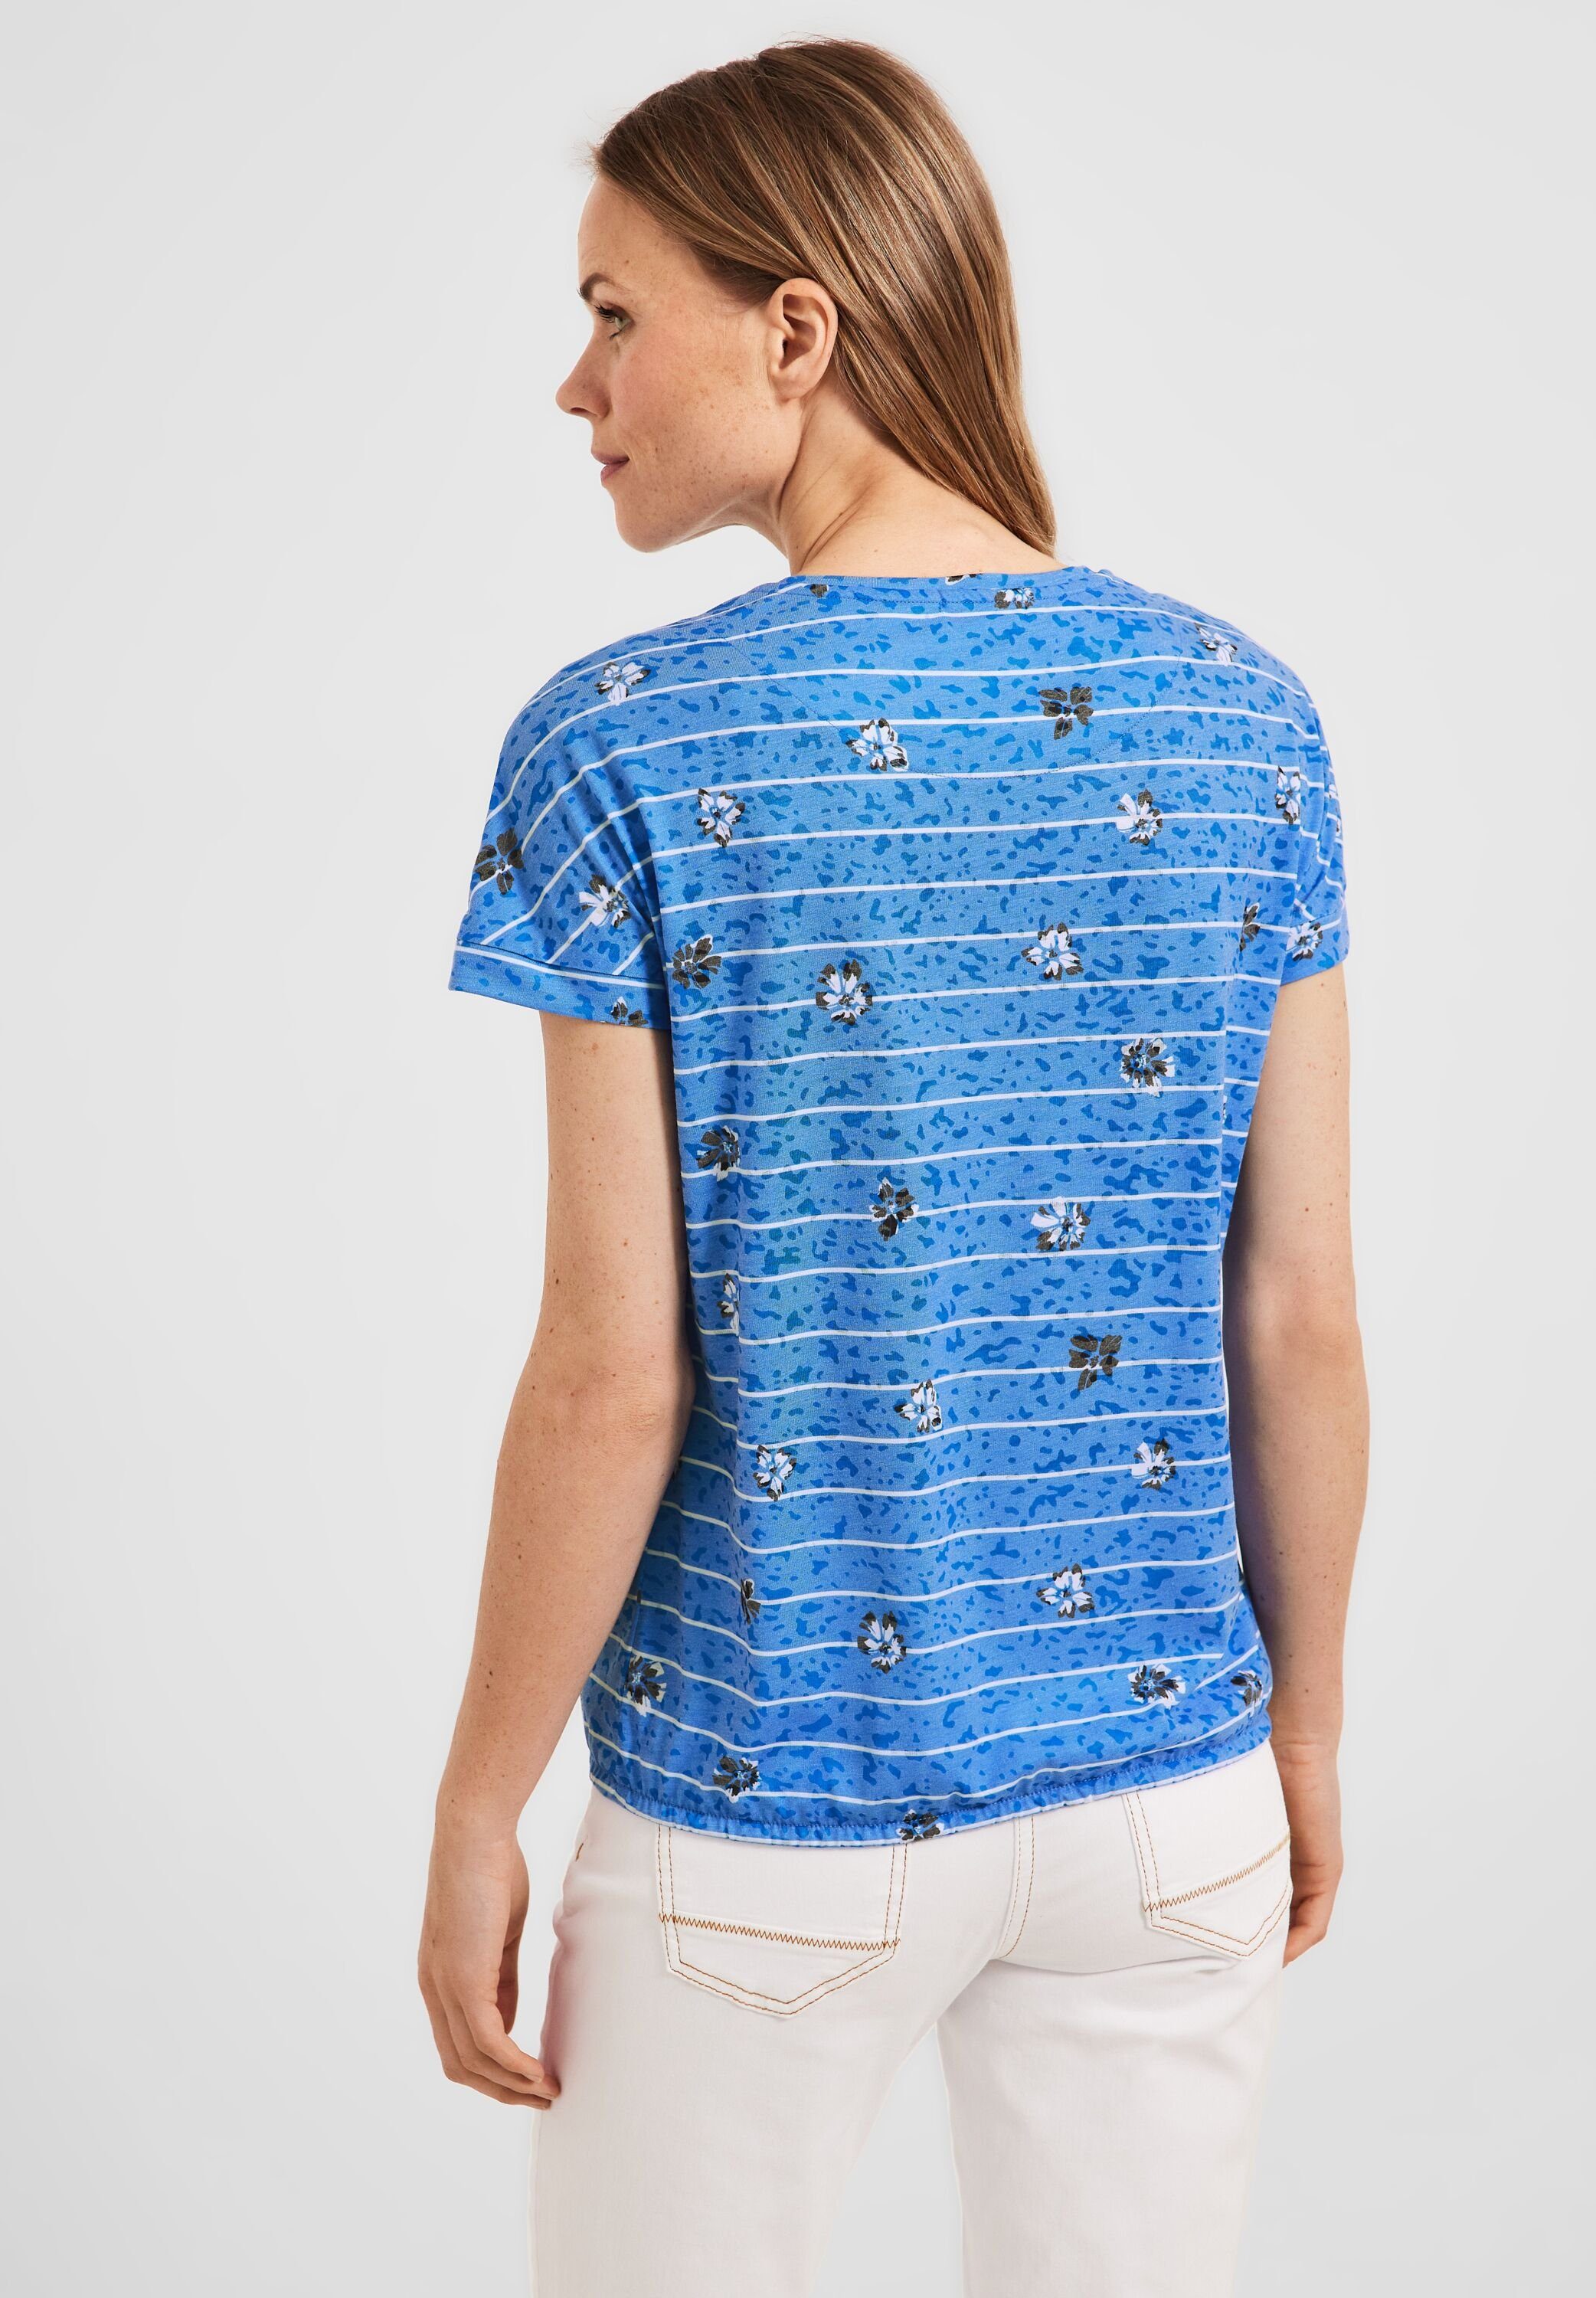 Cecil T-Shirt burn Elastiksaum marina blue mit out